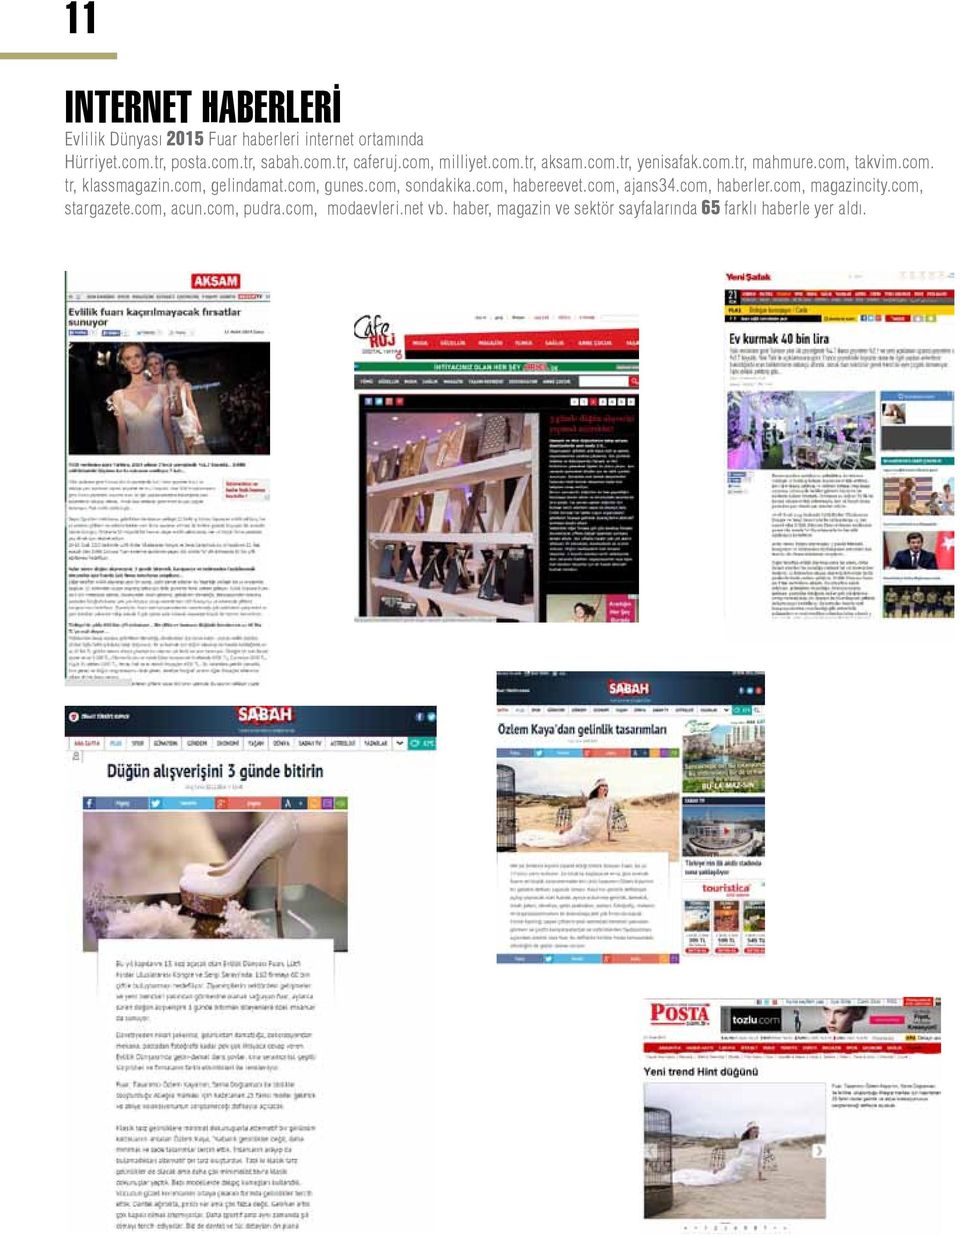 com, gelindamat.com, gunes.com, sondakika.com, habereevet.com, ajans34.com, haberler.com, magazincity.